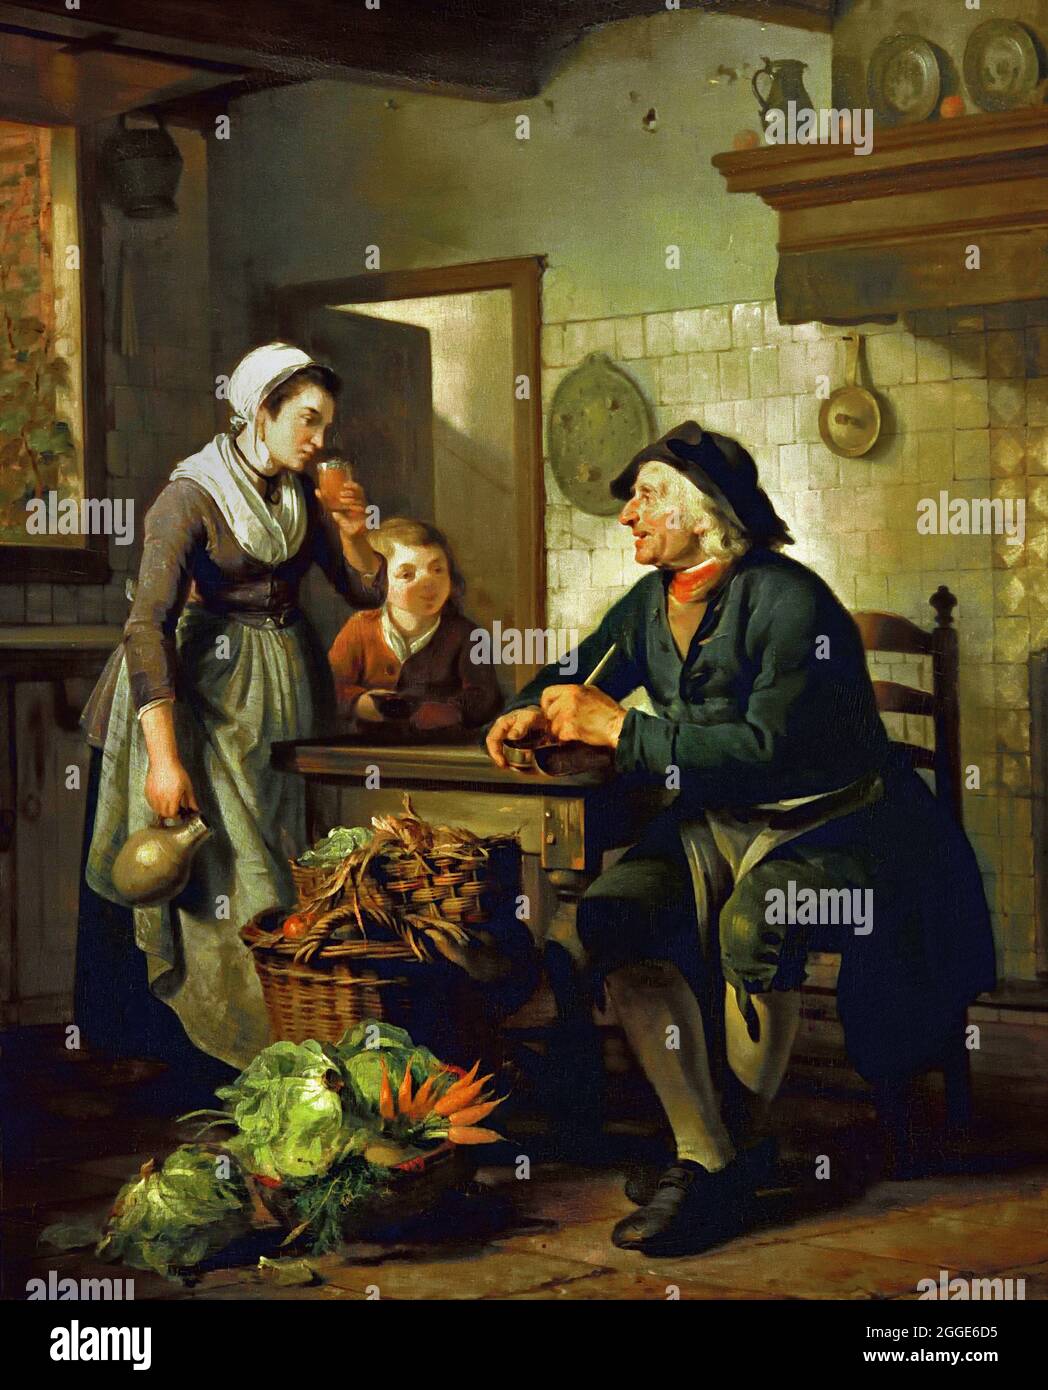 Morgenbesuch 1796 Adriaan de Lelie, 1755-1820 Öl auf Tafel, Niederländisch, Niederlande. (Alte holländische Küche und Kuchenbäcker im Zimmer. Körbe mit Gemüse, Steingutkrug, Zinn, Kamin, Kupfer, ) Stockfoto